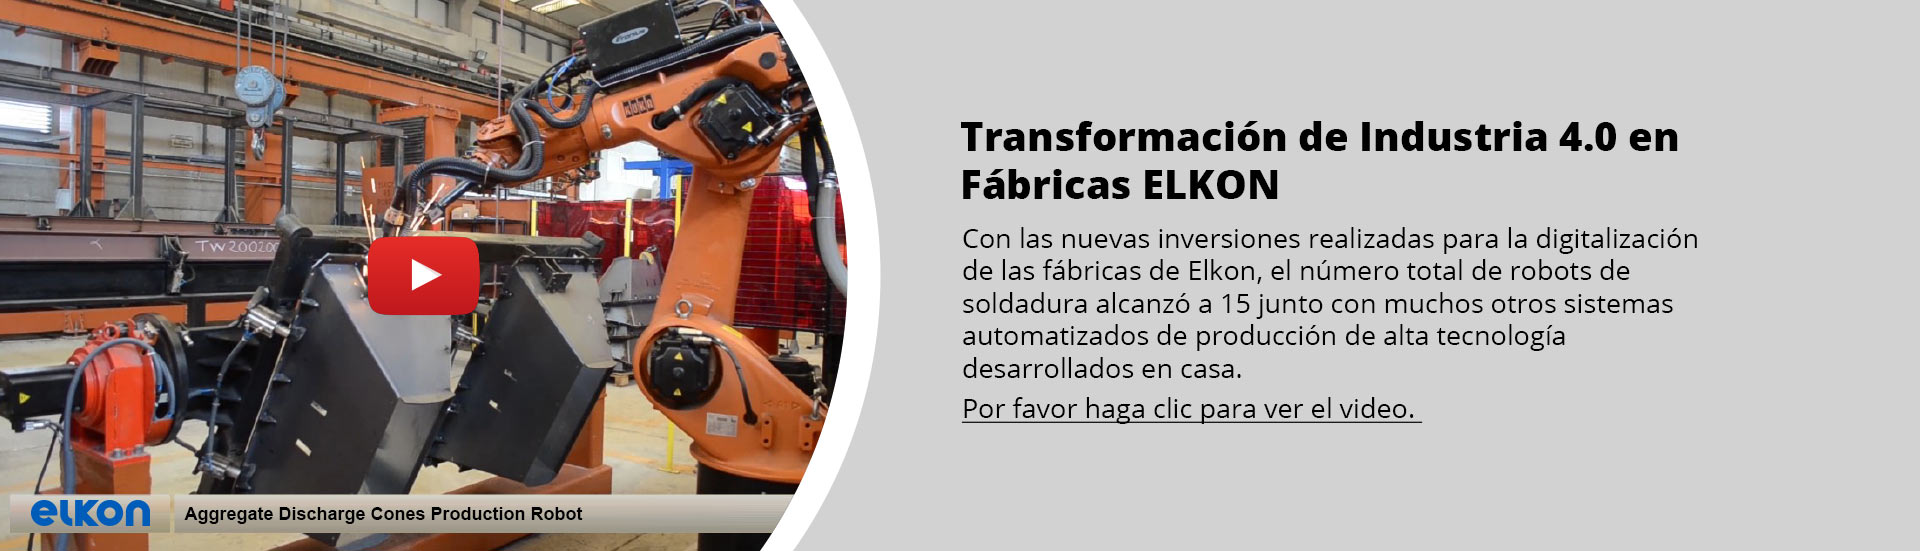 Transformación de Industria 4.0 en ELKON Factories 